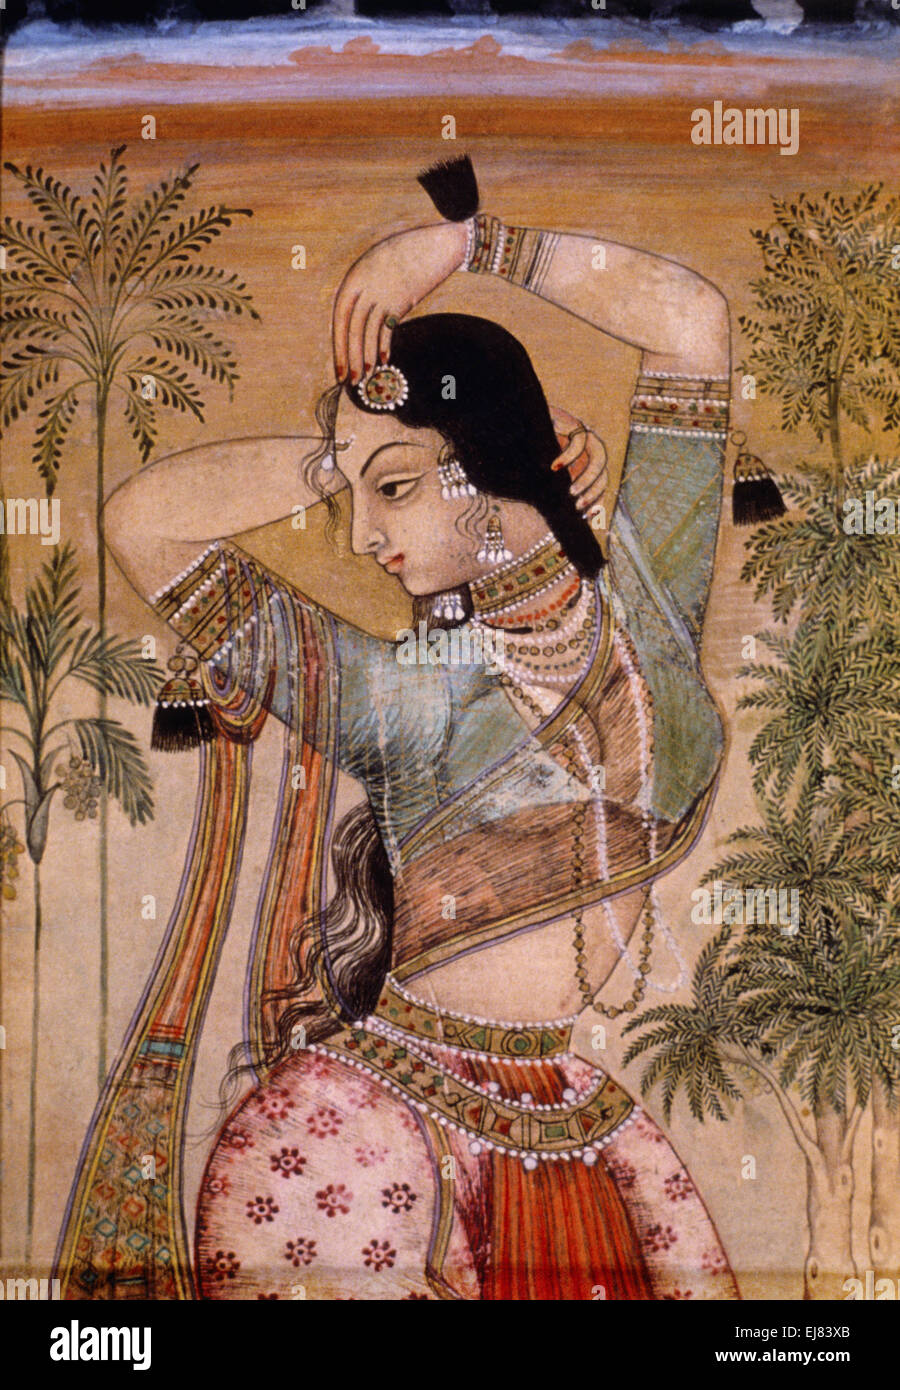 Yakshi-un hindou de la beauté. Peinture miniature moghole circa A.D. 1700 Inde Banque D'Images